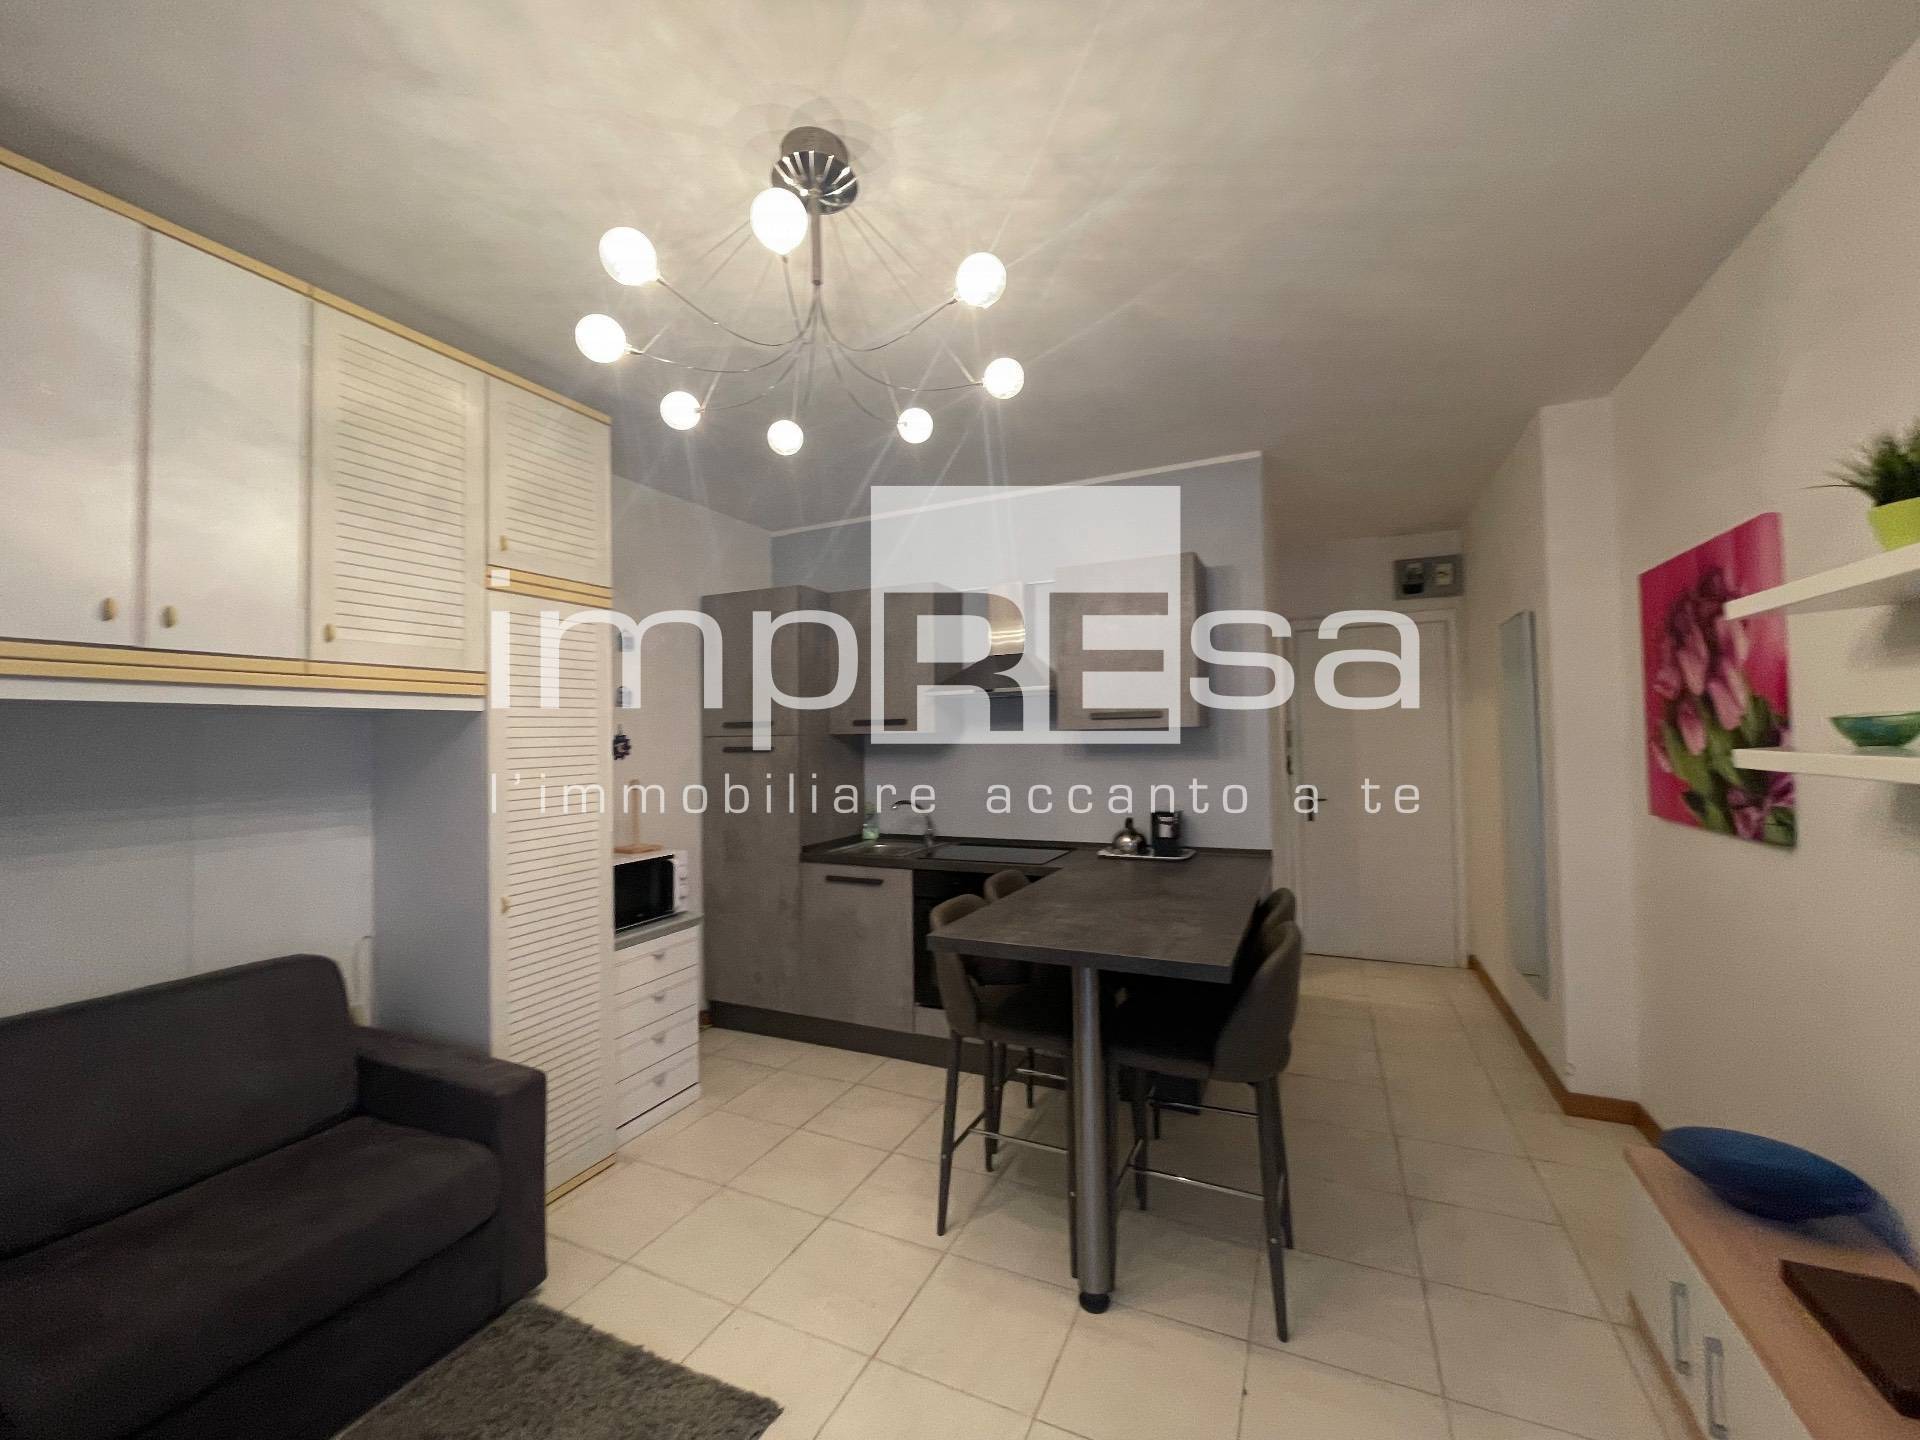 Appartamento in vendita a Caorle, 1 locali, zona Località: PortoS.aMargherita, prezzo € 73.000 | PortaleAgenzieImmobiliari.it